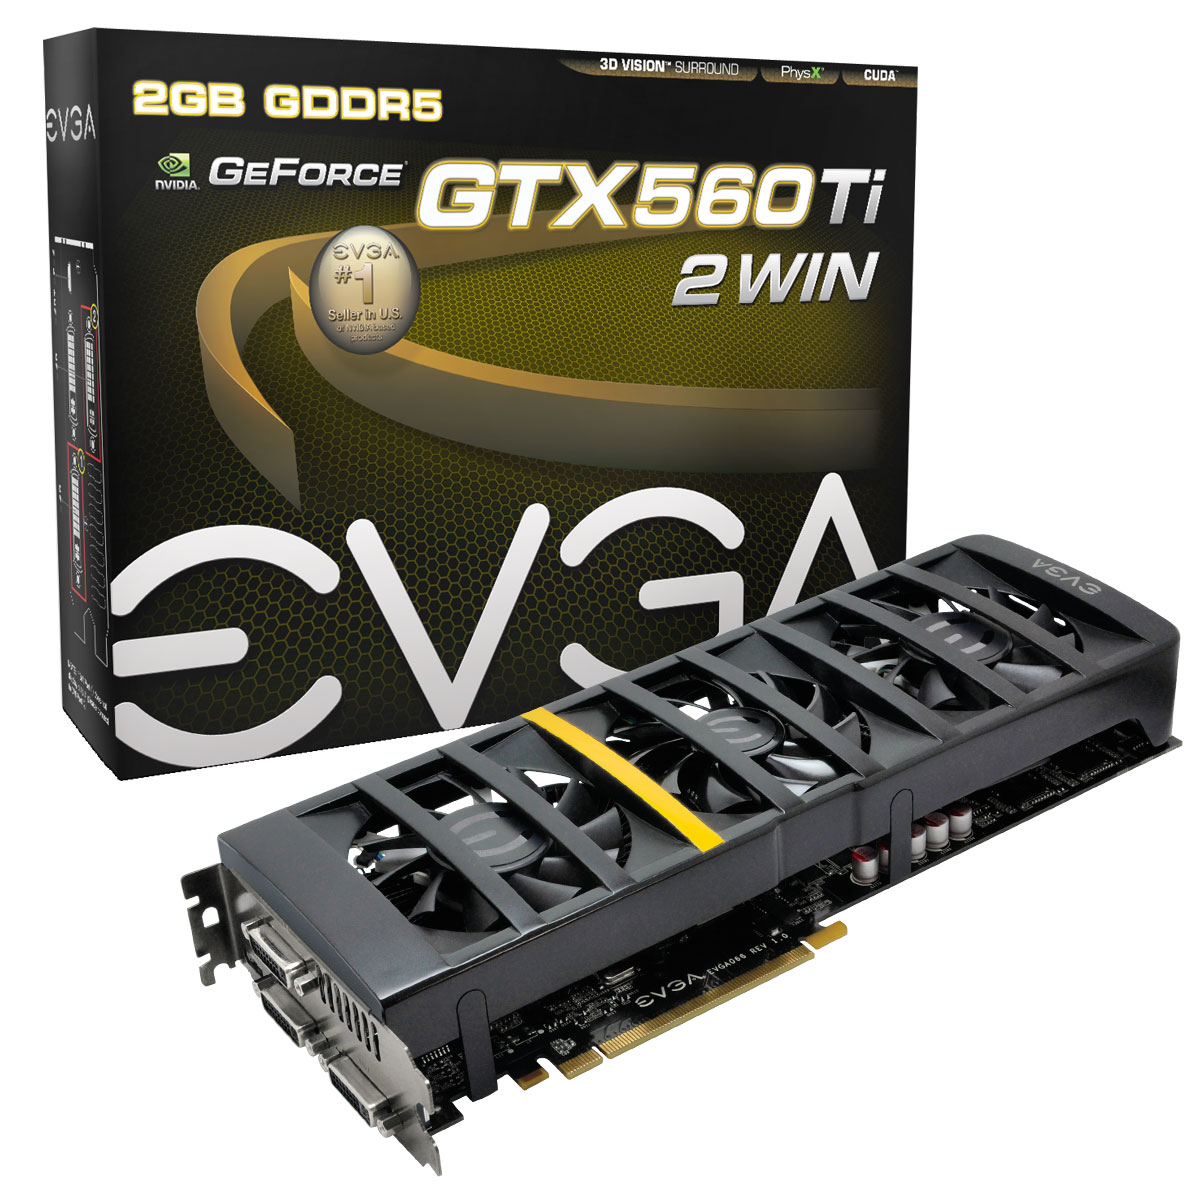 Immagine pubblicata in relazione al seguente contenuto: EVGA lancia la video card dual-gpu GeForce GTX 560 Ti 2Win | Nome immagine: news15987_1.jpg